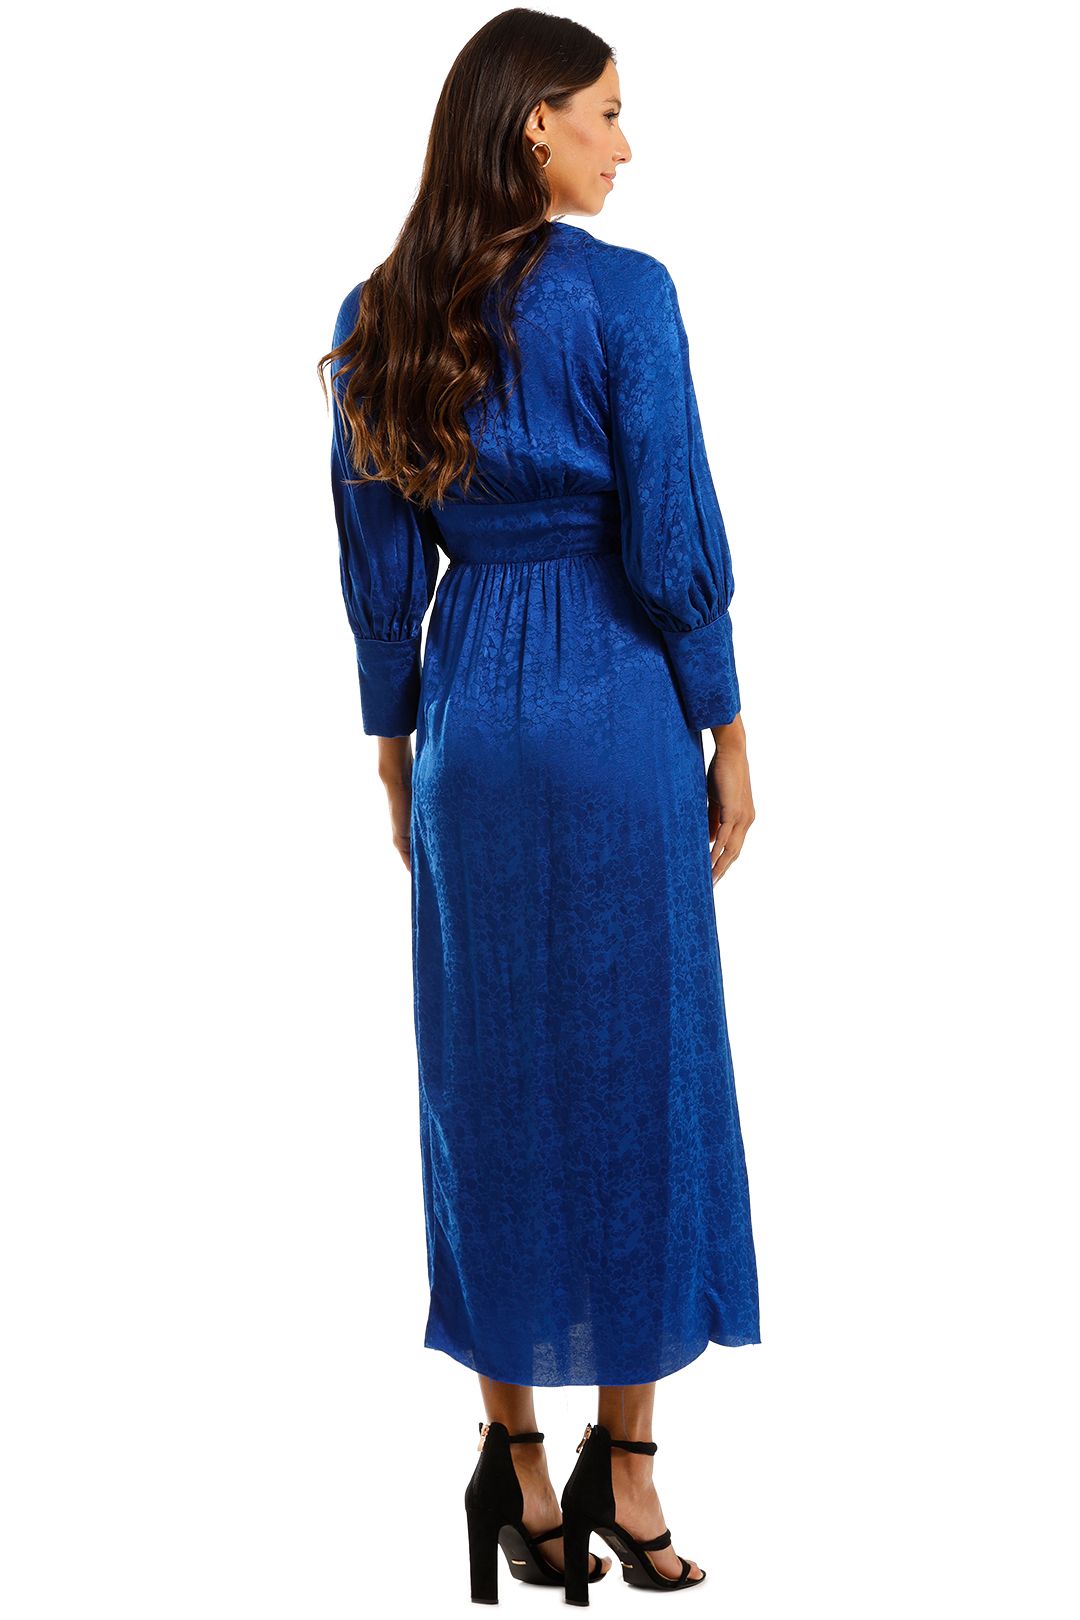 KITX Slinky Dress Blue Maxi Dress Satin Silk